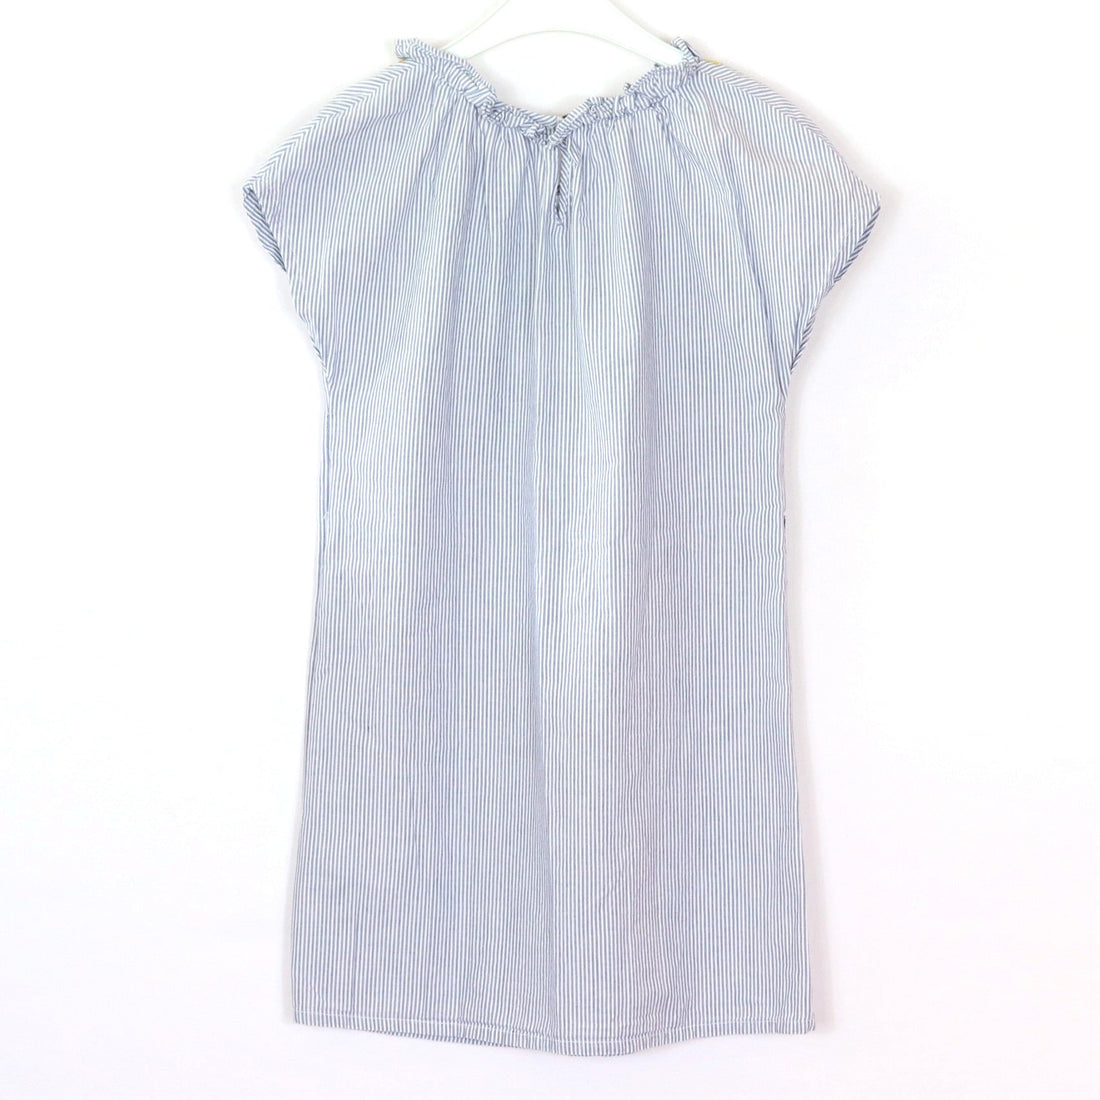 Kleid - Cyrillus - 128 - weiß/blau - liniert - sehr guter Zustand